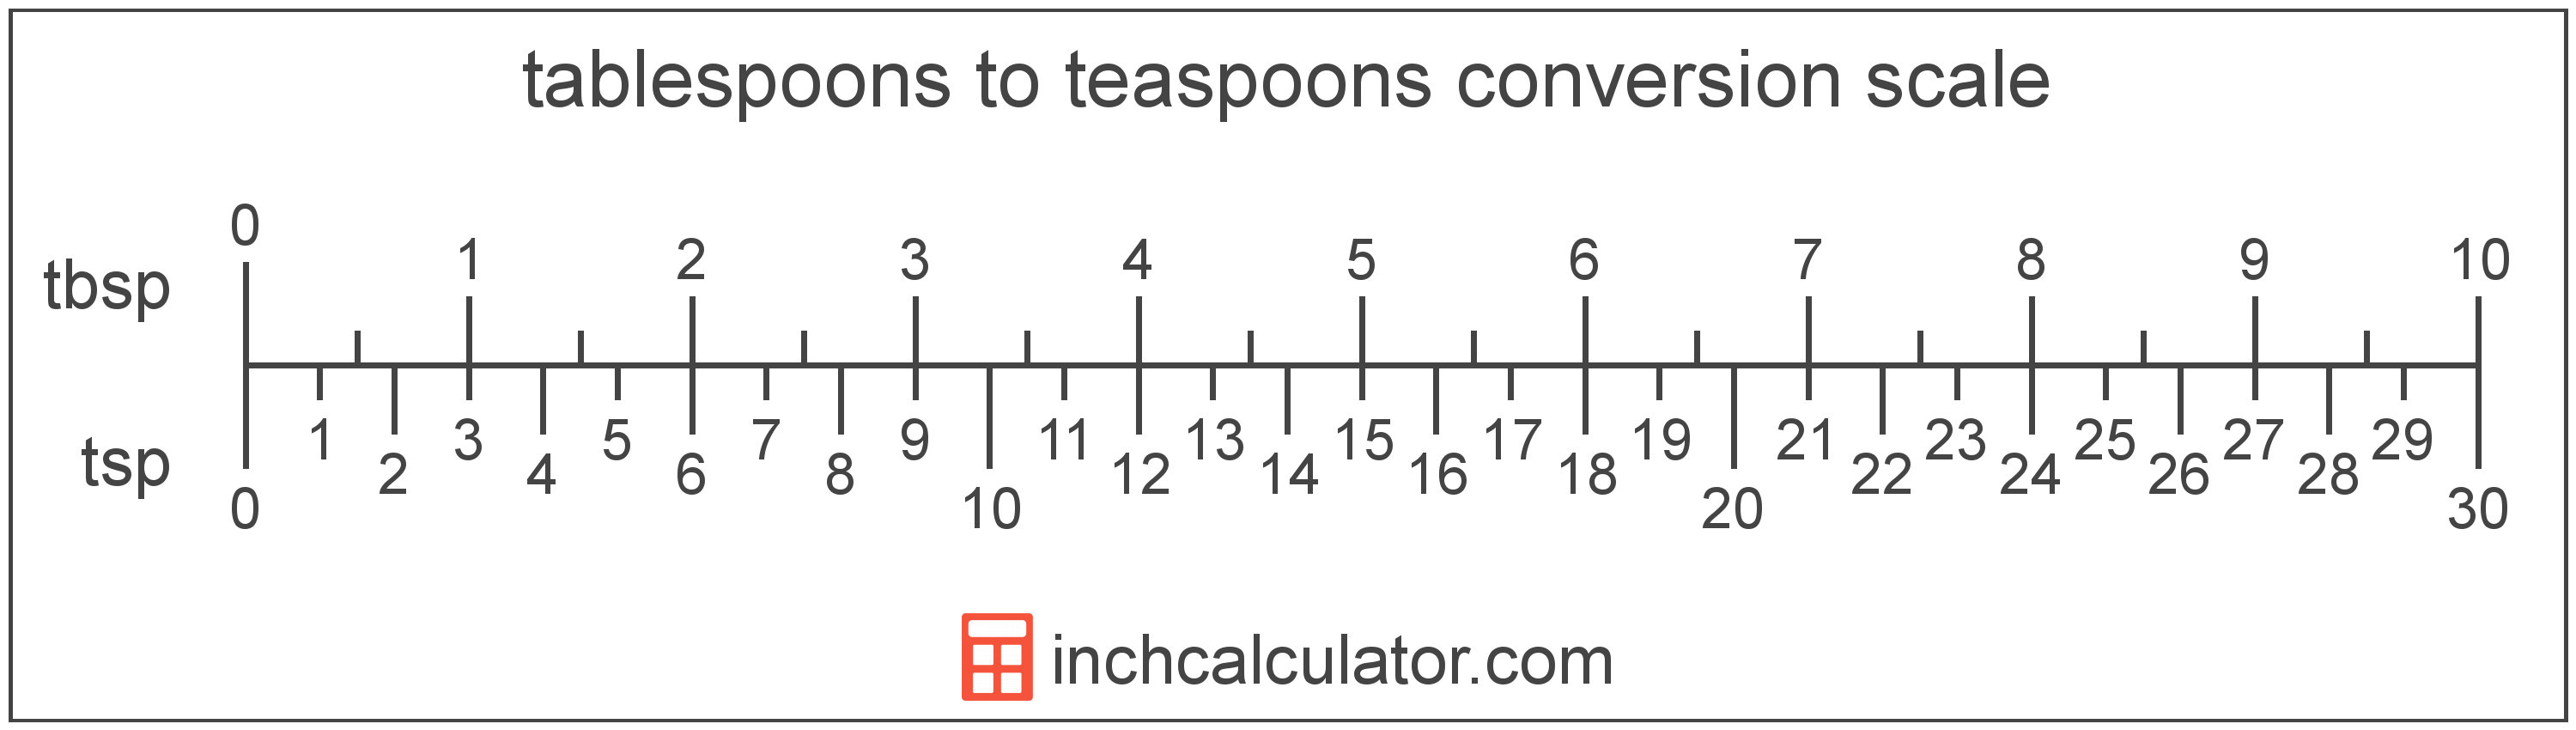 1 Tablespoon(15 mL, 3 Teaspoon, 1/16 Cup